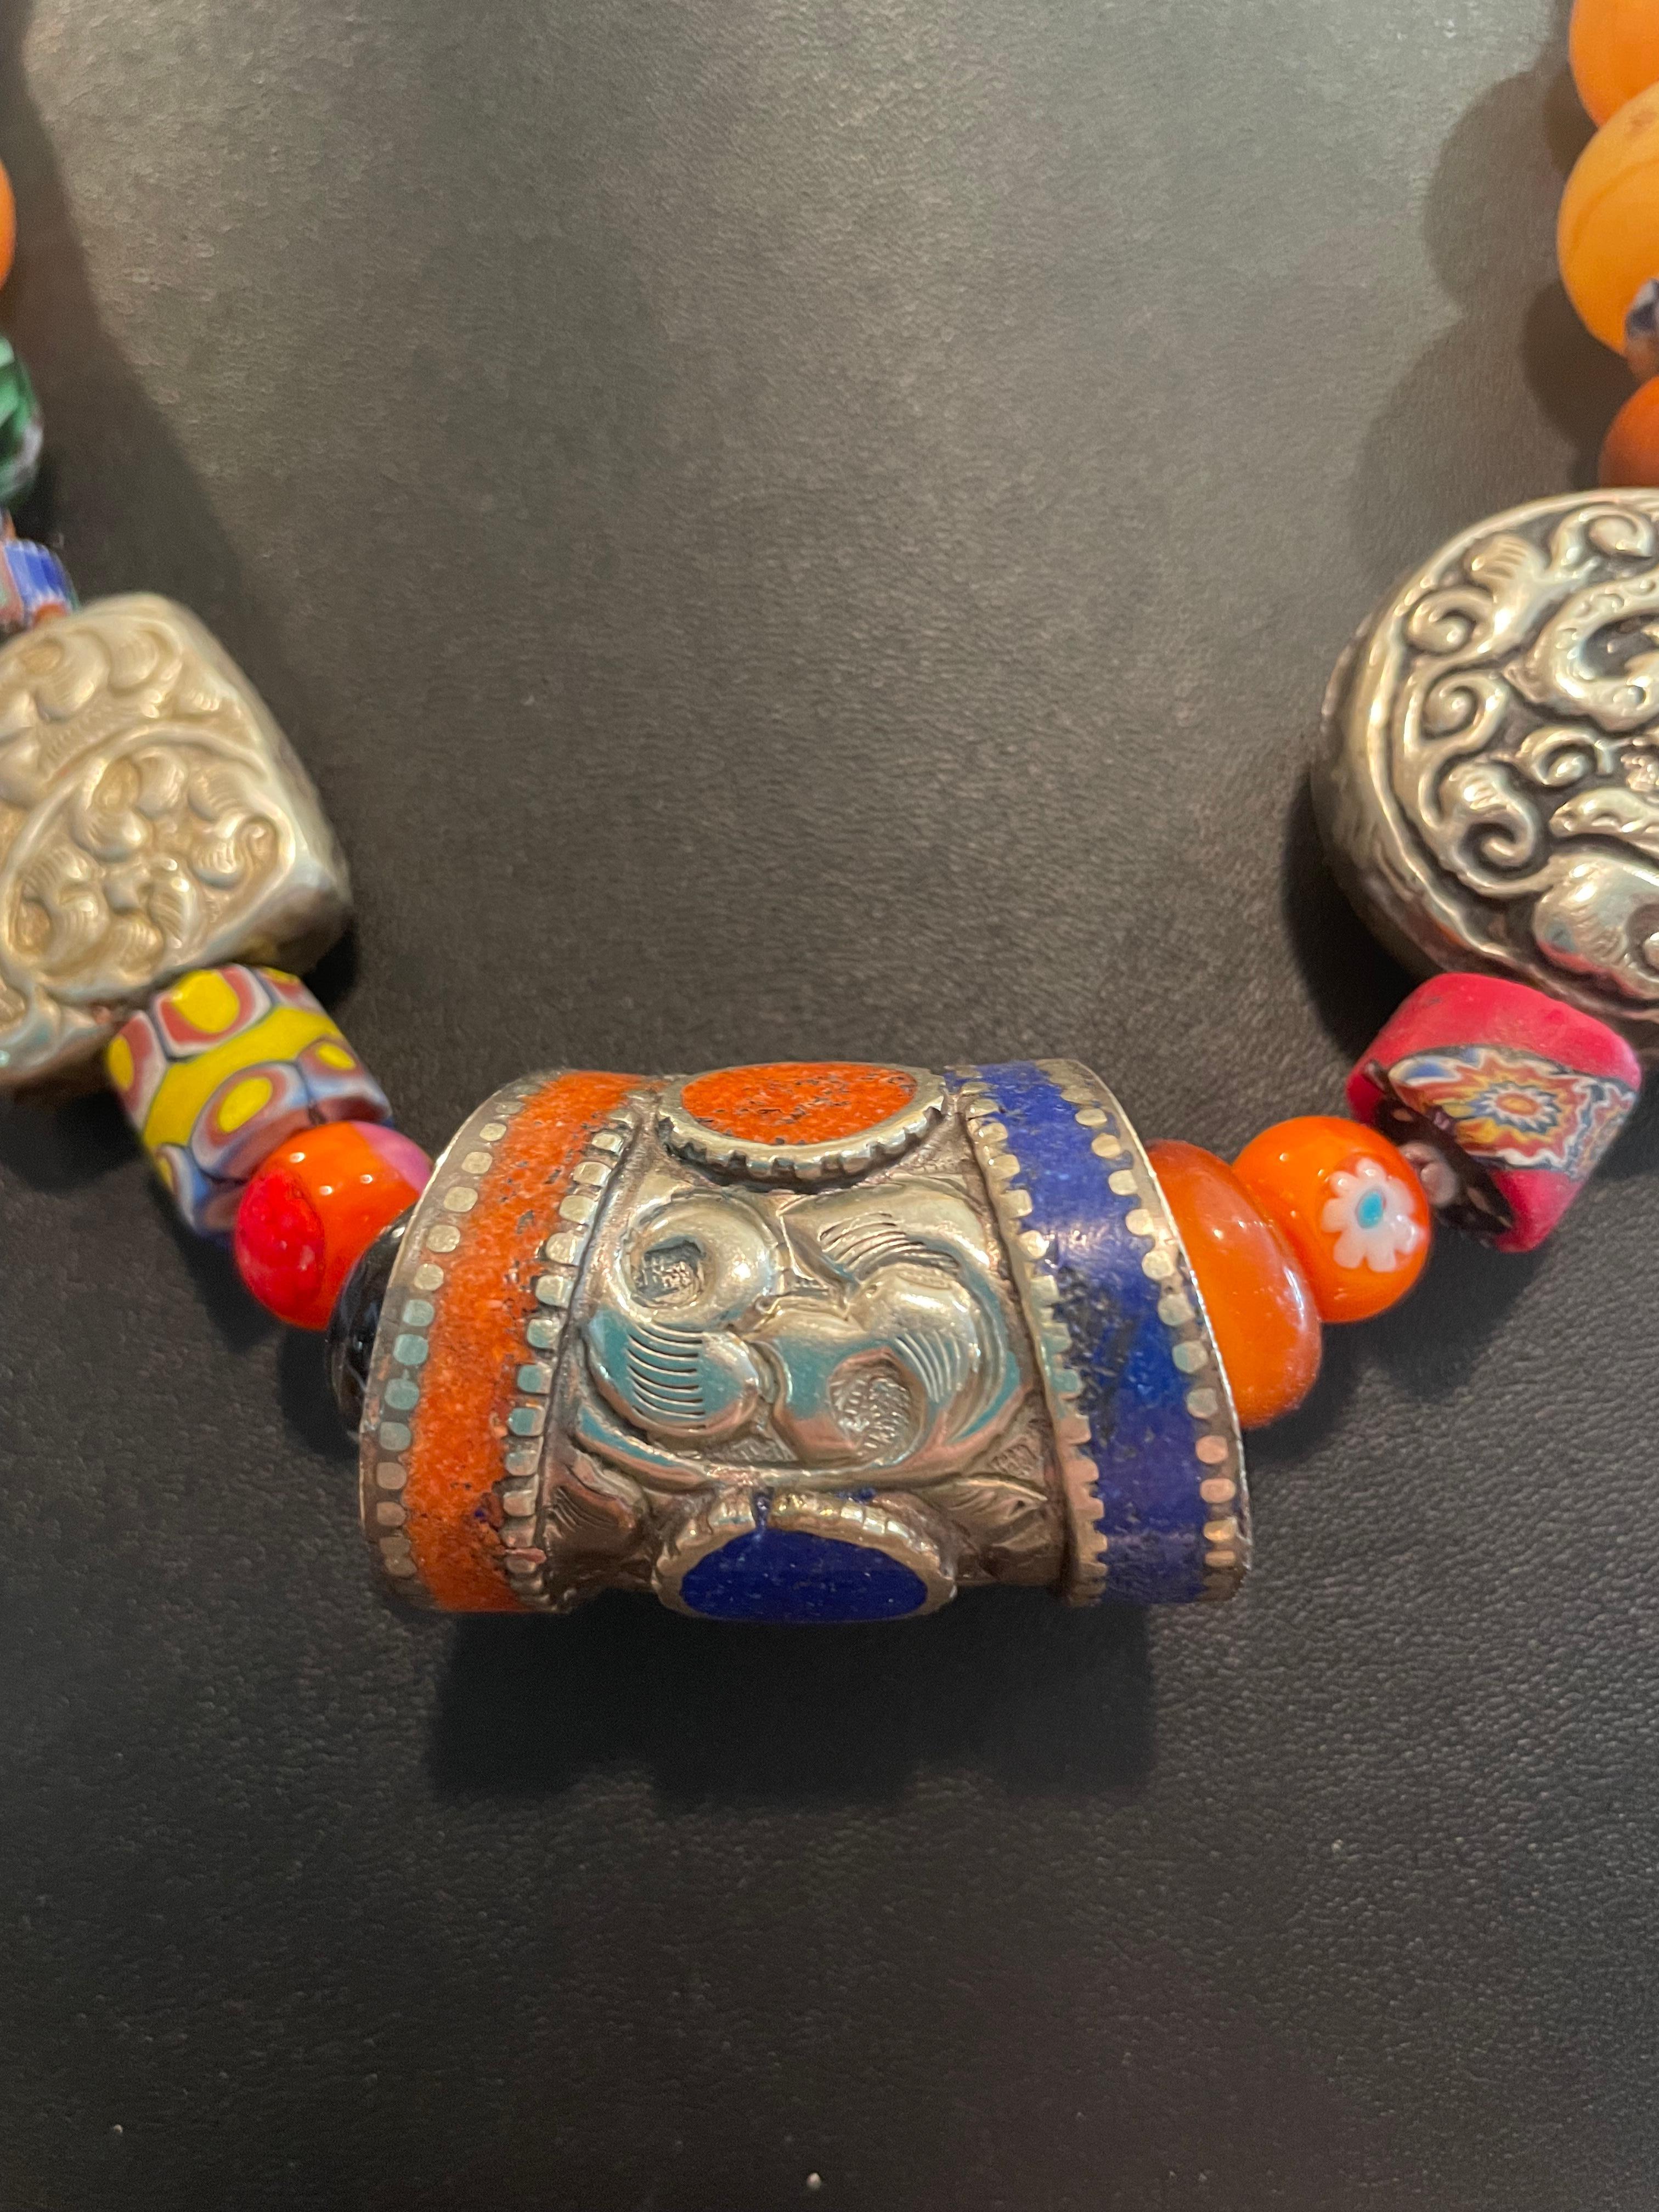 LB bietet eine Stammes-Stil Halskette von tibetischen Silber, Afghani eingelegt Mittelstück, Vintage venezianischen Glas Handel Perlen, Koralle, copal Bernstein, Sterling Silber Vintage mexikanischen Perlen.
Die Endkegel sind aus thailändischem